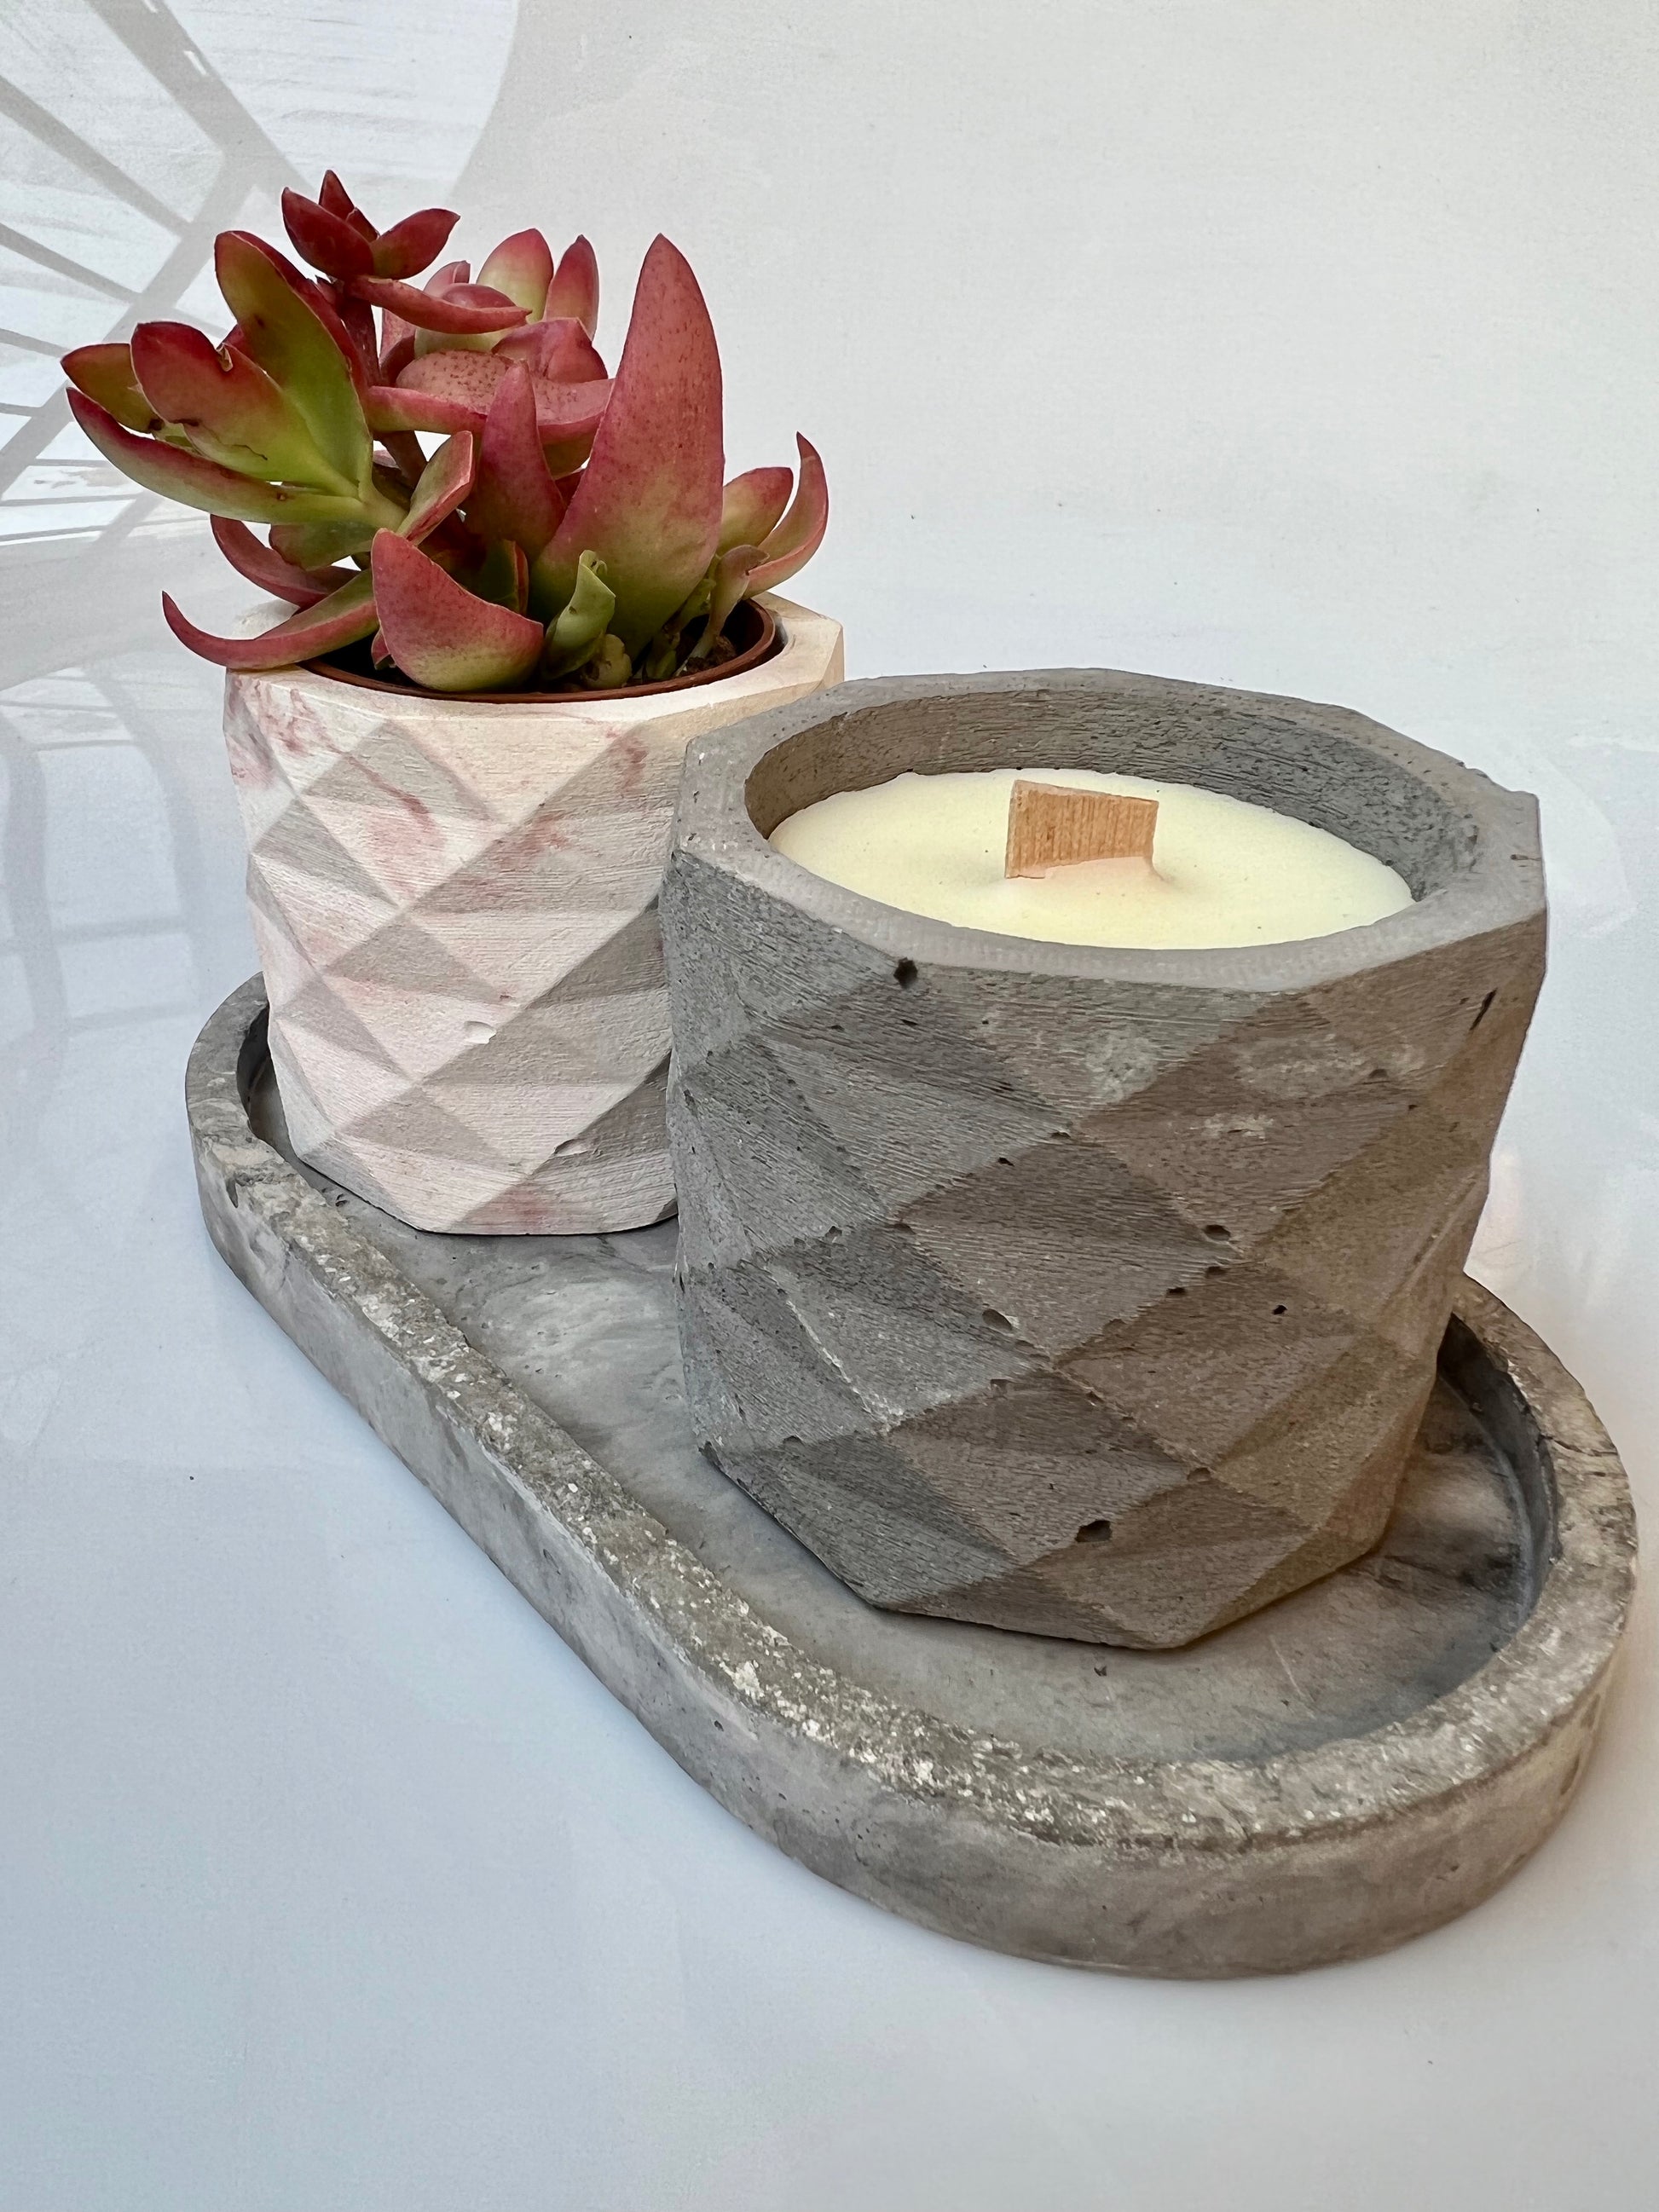 candela Ughetta in cemento e cera di soia profumata con oli essenziali naturali colore grigio e marmorizzato rosa 